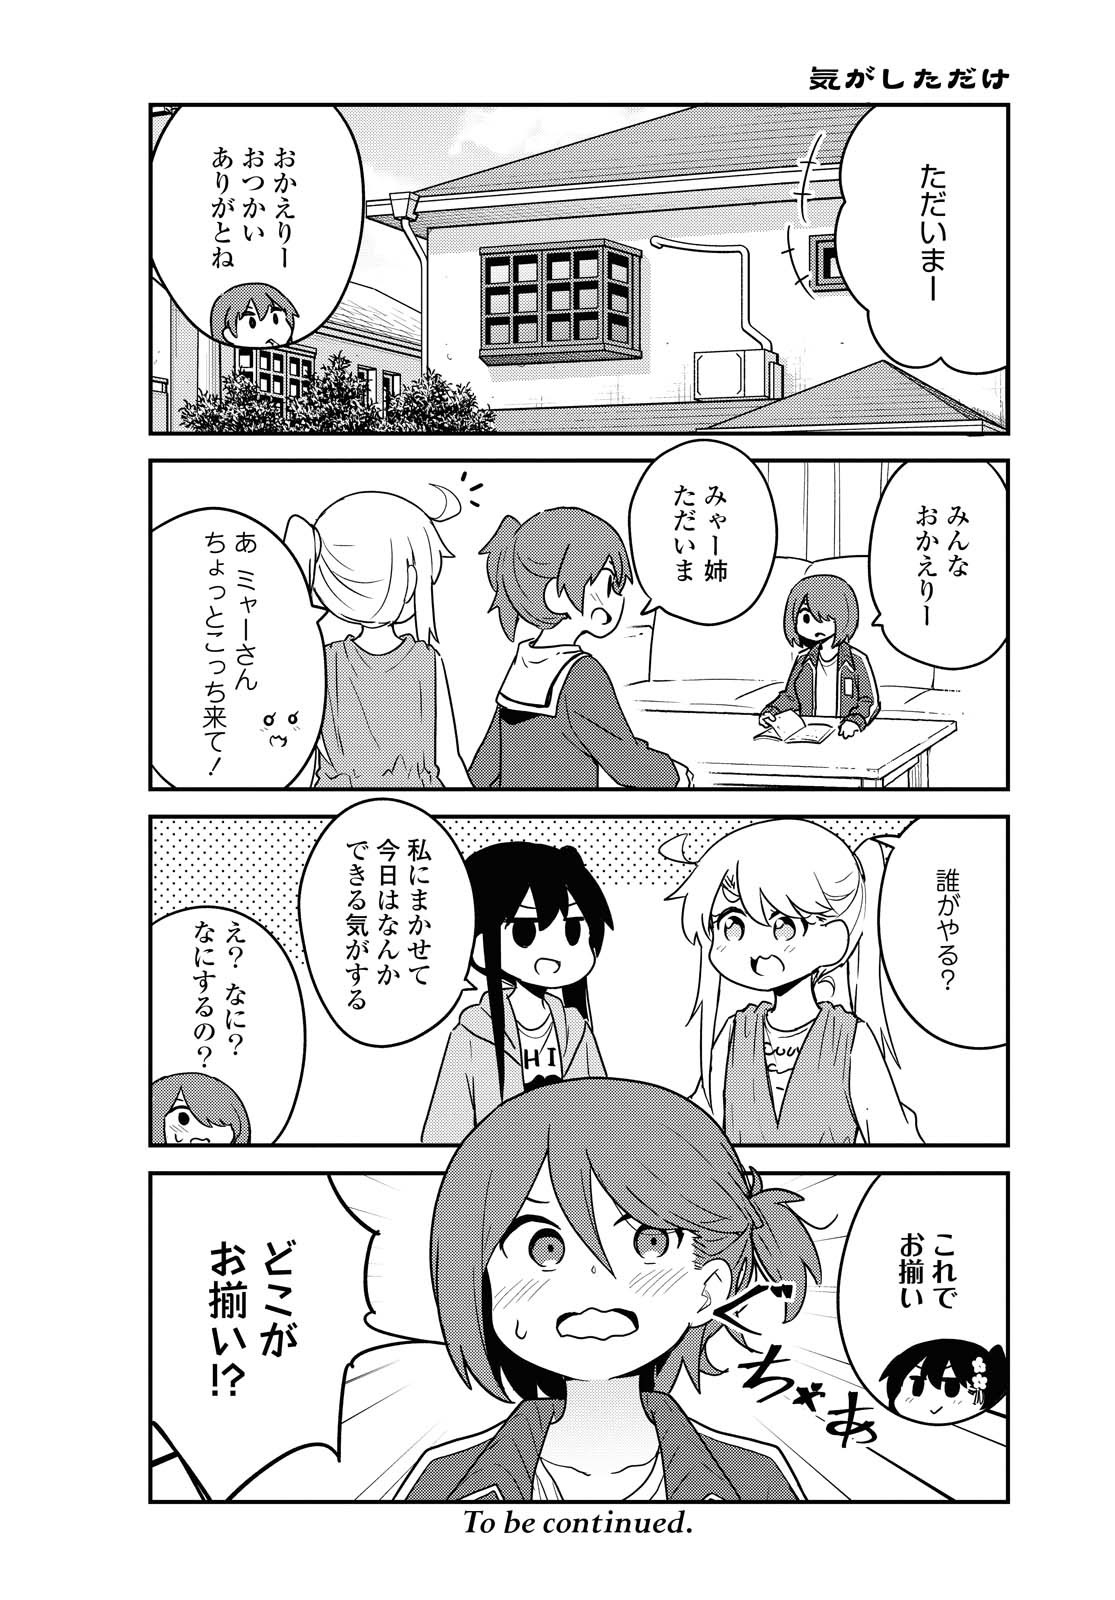 Watashi ni Tenshi ga Maiorita! - Chapter 81 - Page 10